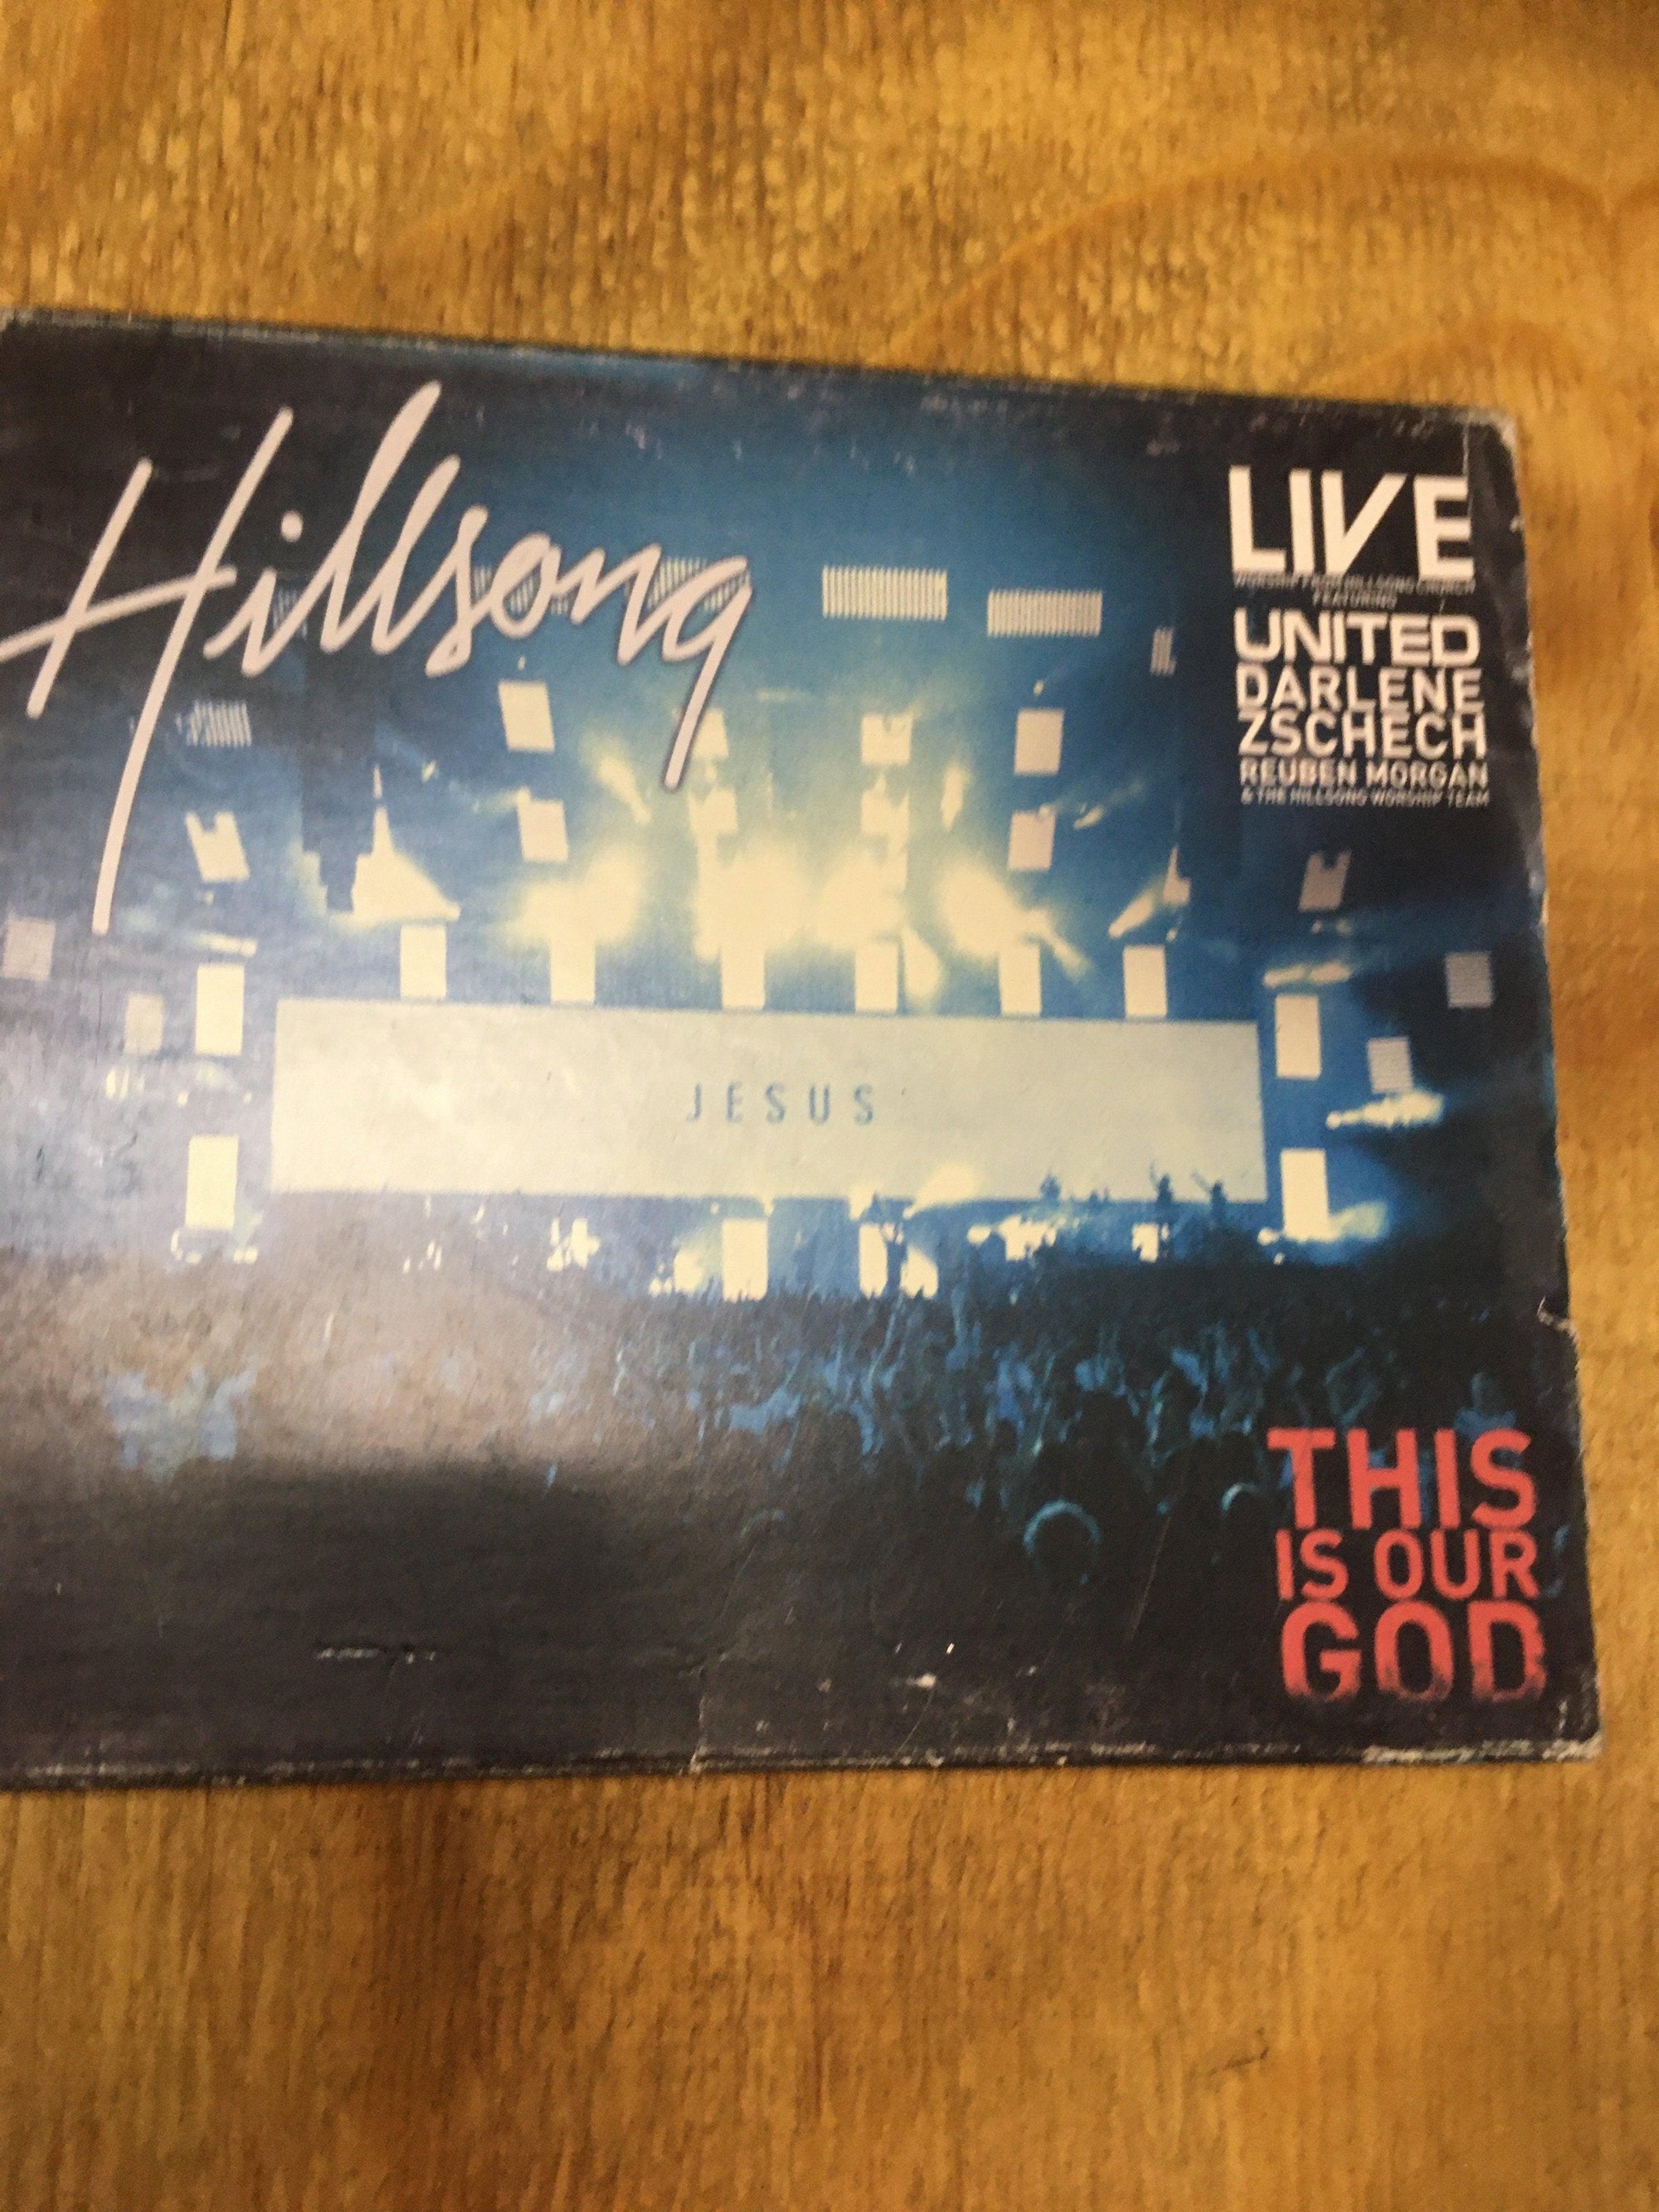 Hillsong (Jesus) - CD - 2ndhandwarehouse.com